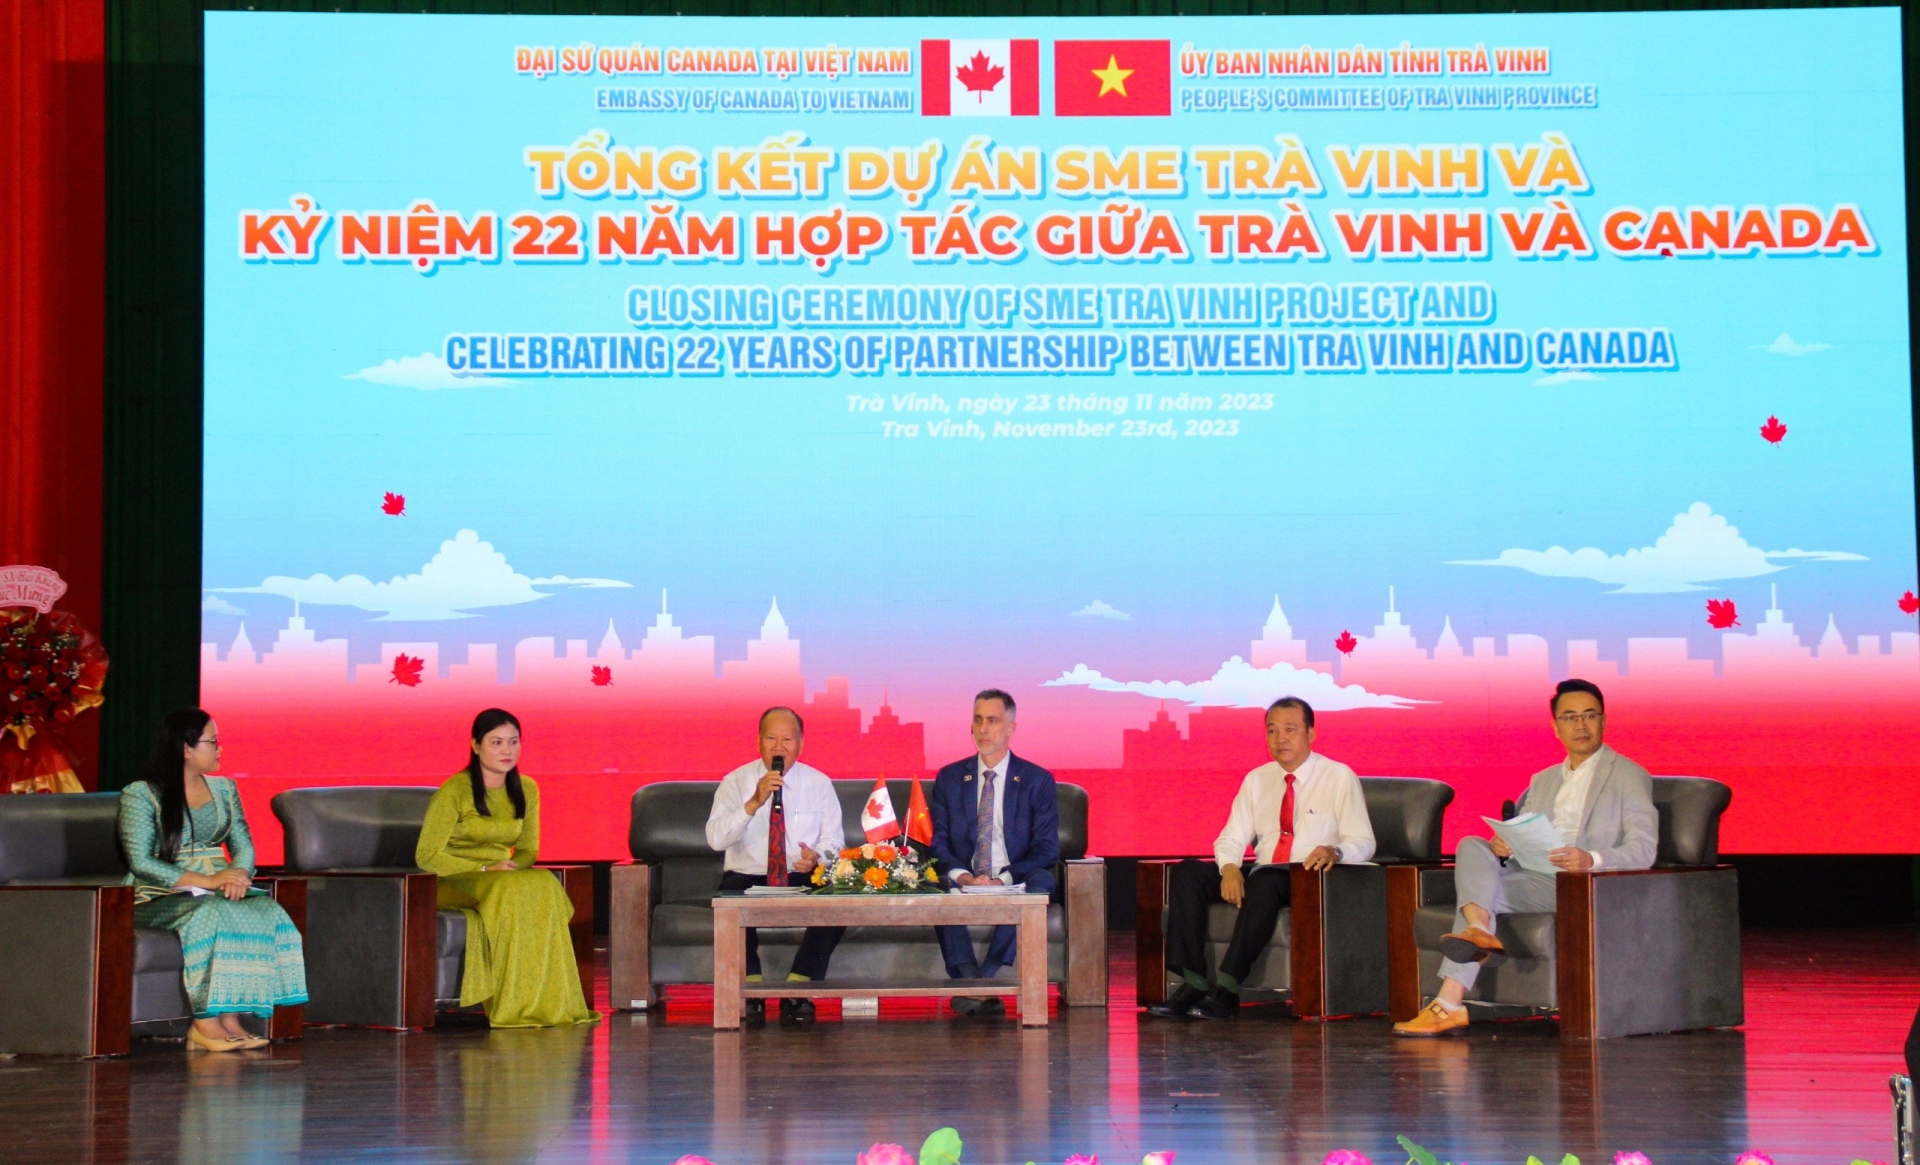 茶荣省中小型企业发展项目总结会议暨加拿大与茶荣省建立合作关系22周年庆典场景。